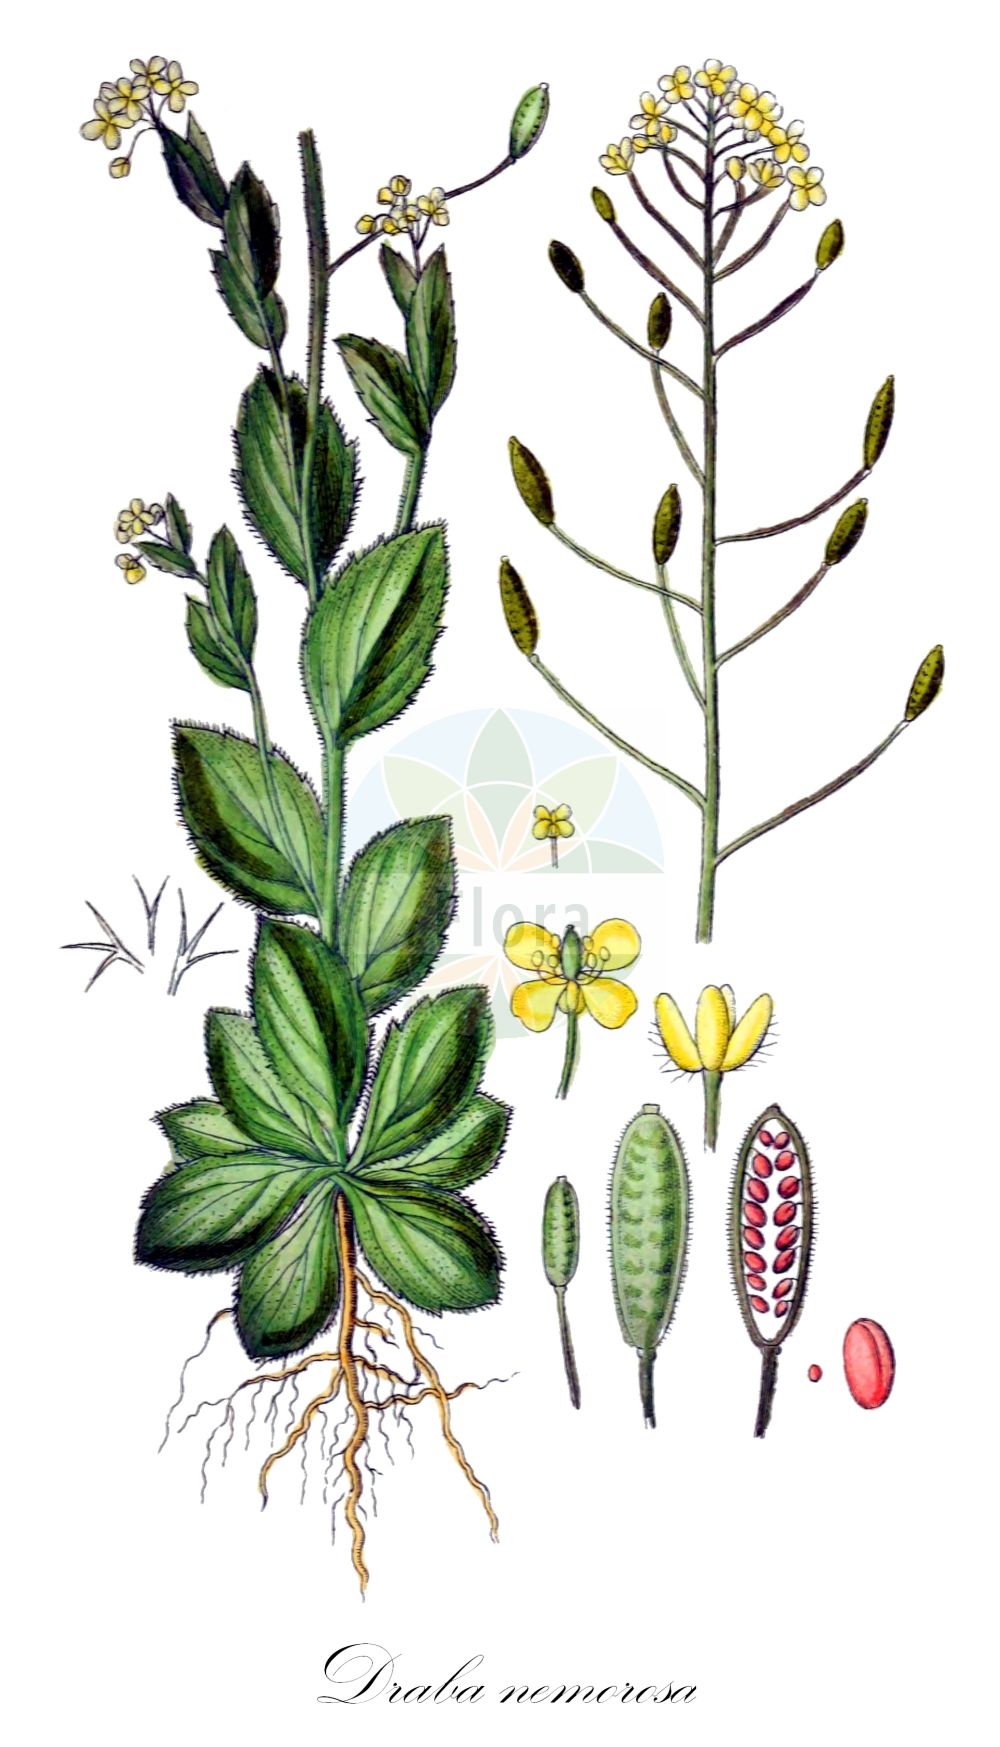 Historische Abbildung von Draba nemorosa (Hain-Felsenblümchen - Woodland Draba). Das Bild zeigt Blatt, Bluete, Frucht und Same. ---- Historical Drawing of Draba nemorosa (Hain-Felsenblümchen - Woodland Draba). The image is showing leaf, flower, fruit and seed.(Draba nemorosa,Hain-Felsenblümchen,Woodland Draba,Draba nemoralis,Draba nemorosa,Draba nemorosa L. var.,Draba nemorosa var. leiocarpa,Hain-Felsenbluemchen,Woodland Draba,Wood Whitlow Grass,Draba,Felsenblümchen,Whitlowgrass,Brassicaceae,Kreuzblütler,Cabbage family,Blatt,Bluete,Frucht,Same,leaf,flower,fruit,seed,Sturm (1796f))